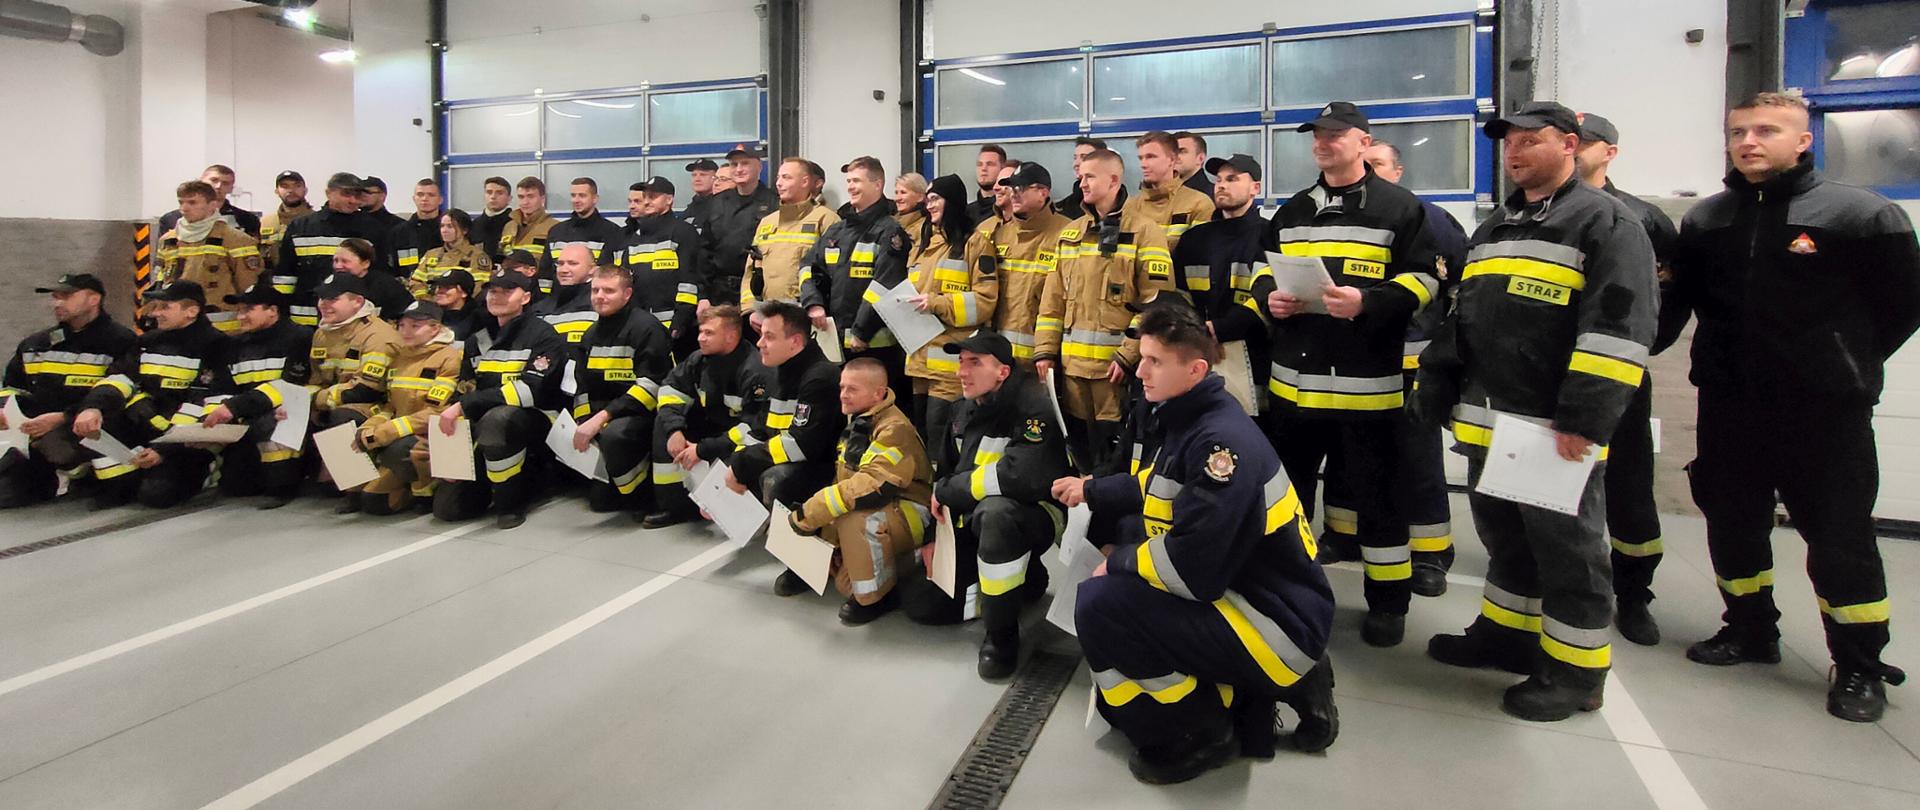 Grupa strażaków pozuje wspólnie do zdjęcia